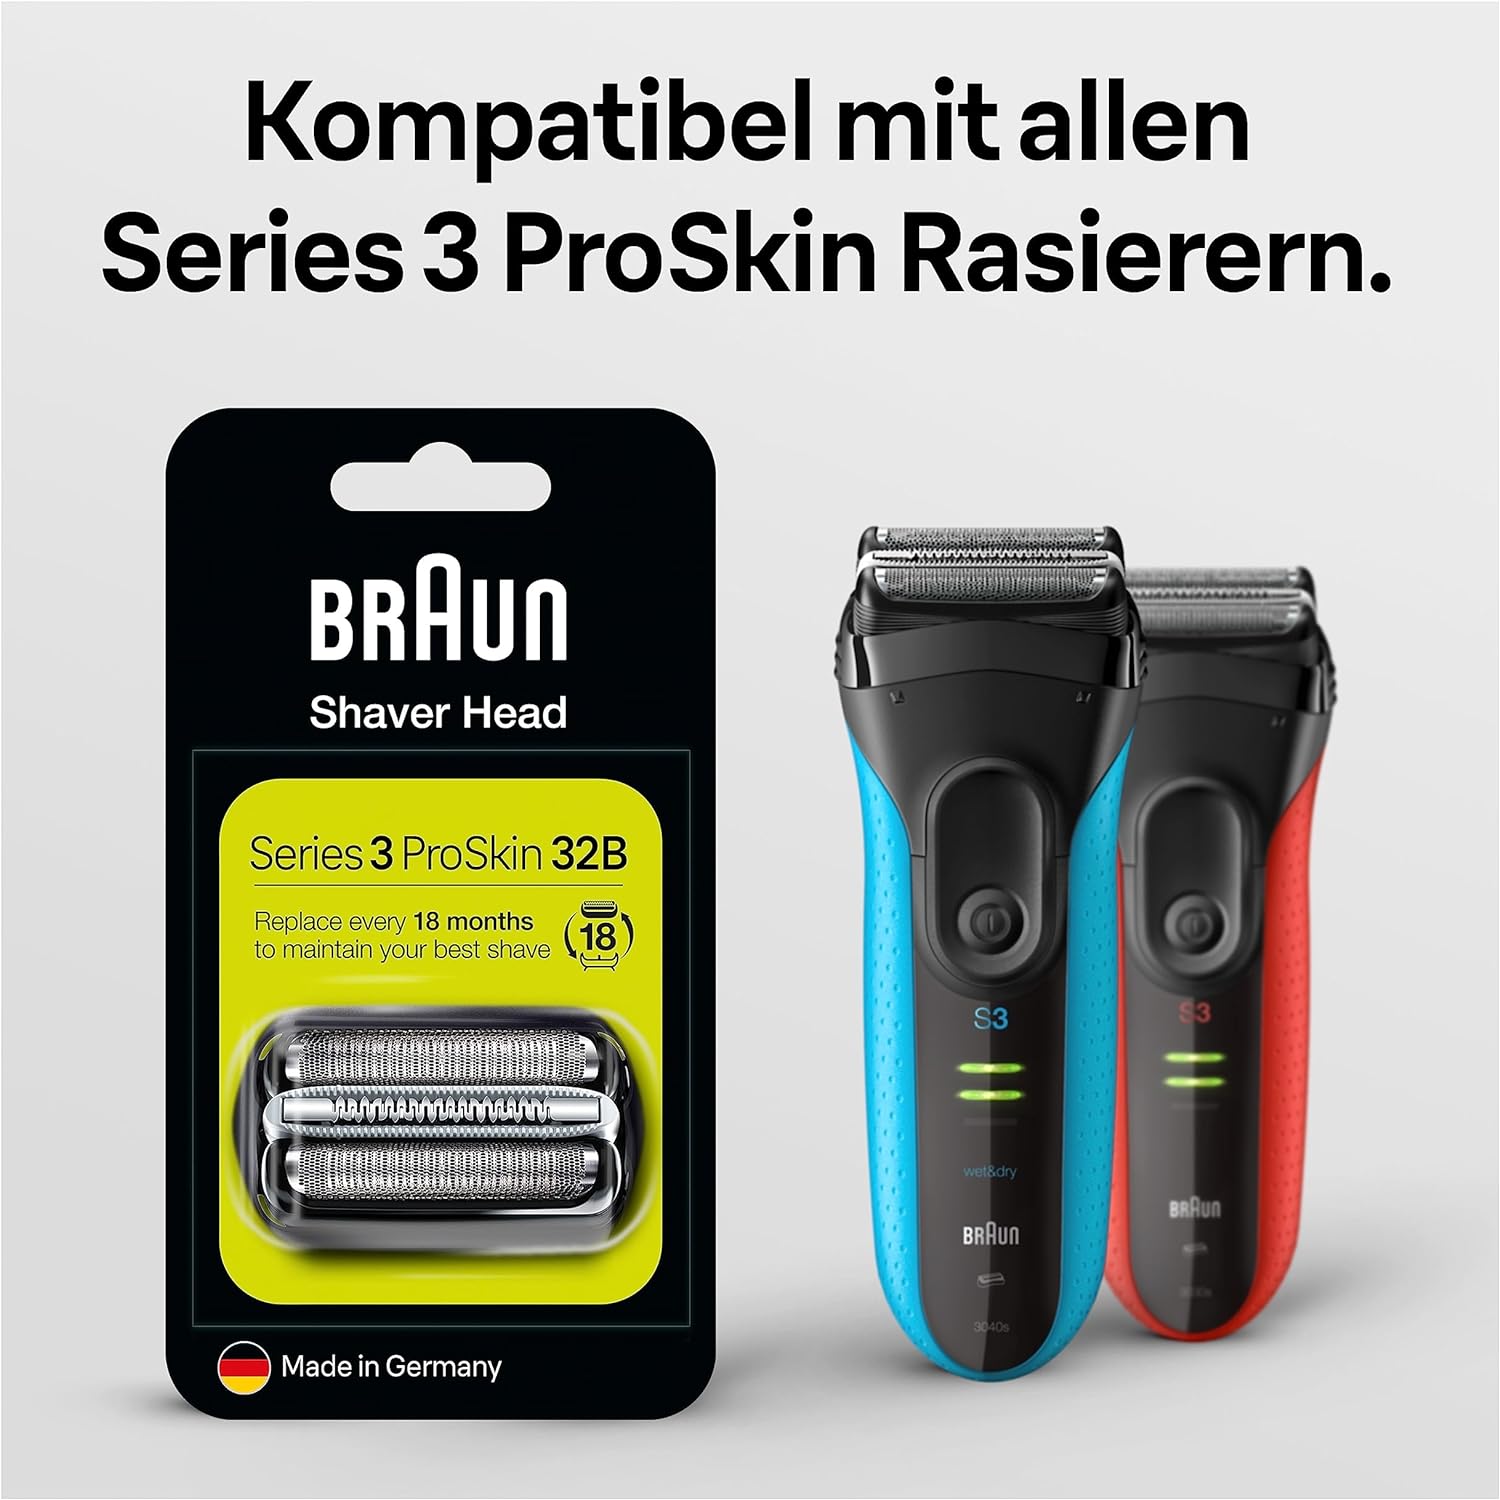 BRAUN KP 32B Kombipack kompatibel mit Rasierer Herren Series 3 ProSkin